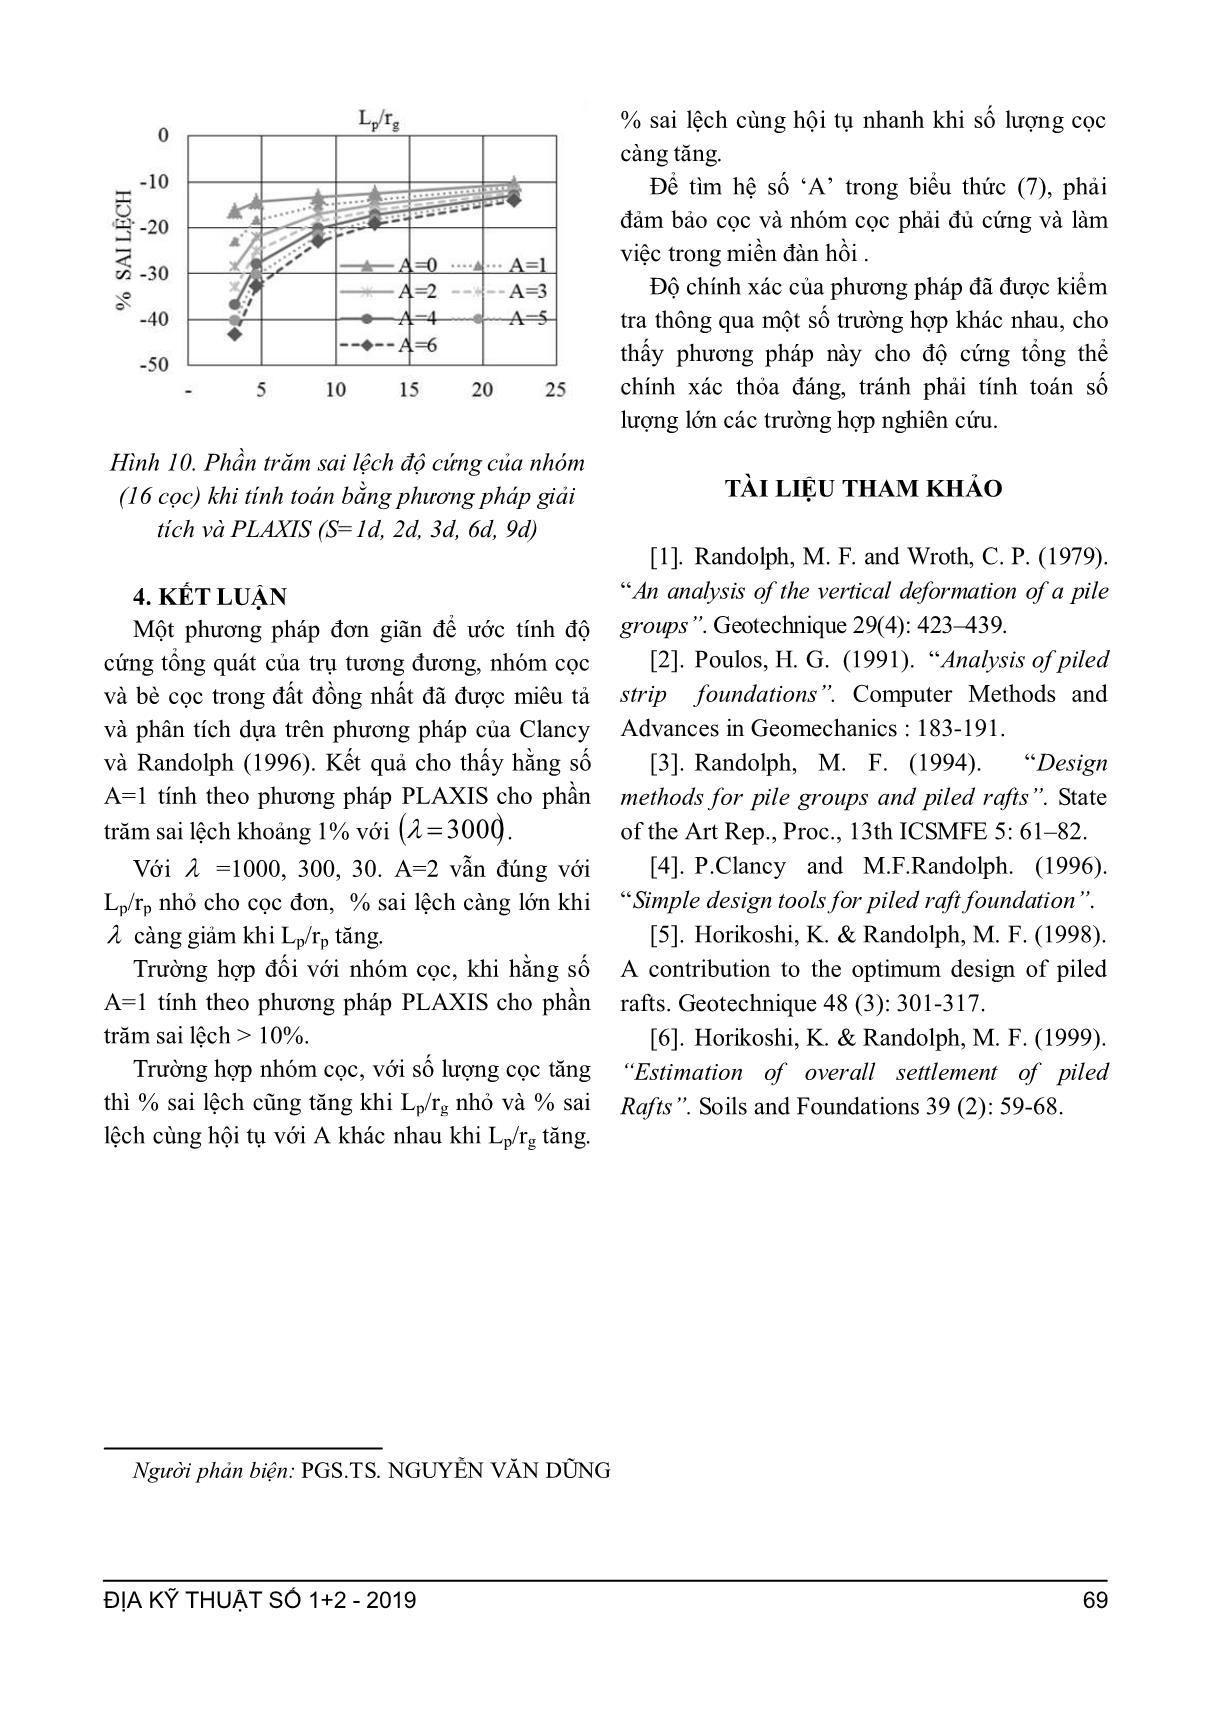 Phân tích các phương pháp tính toán độ cứng của cọc đơn và nhóm cọc trang 5